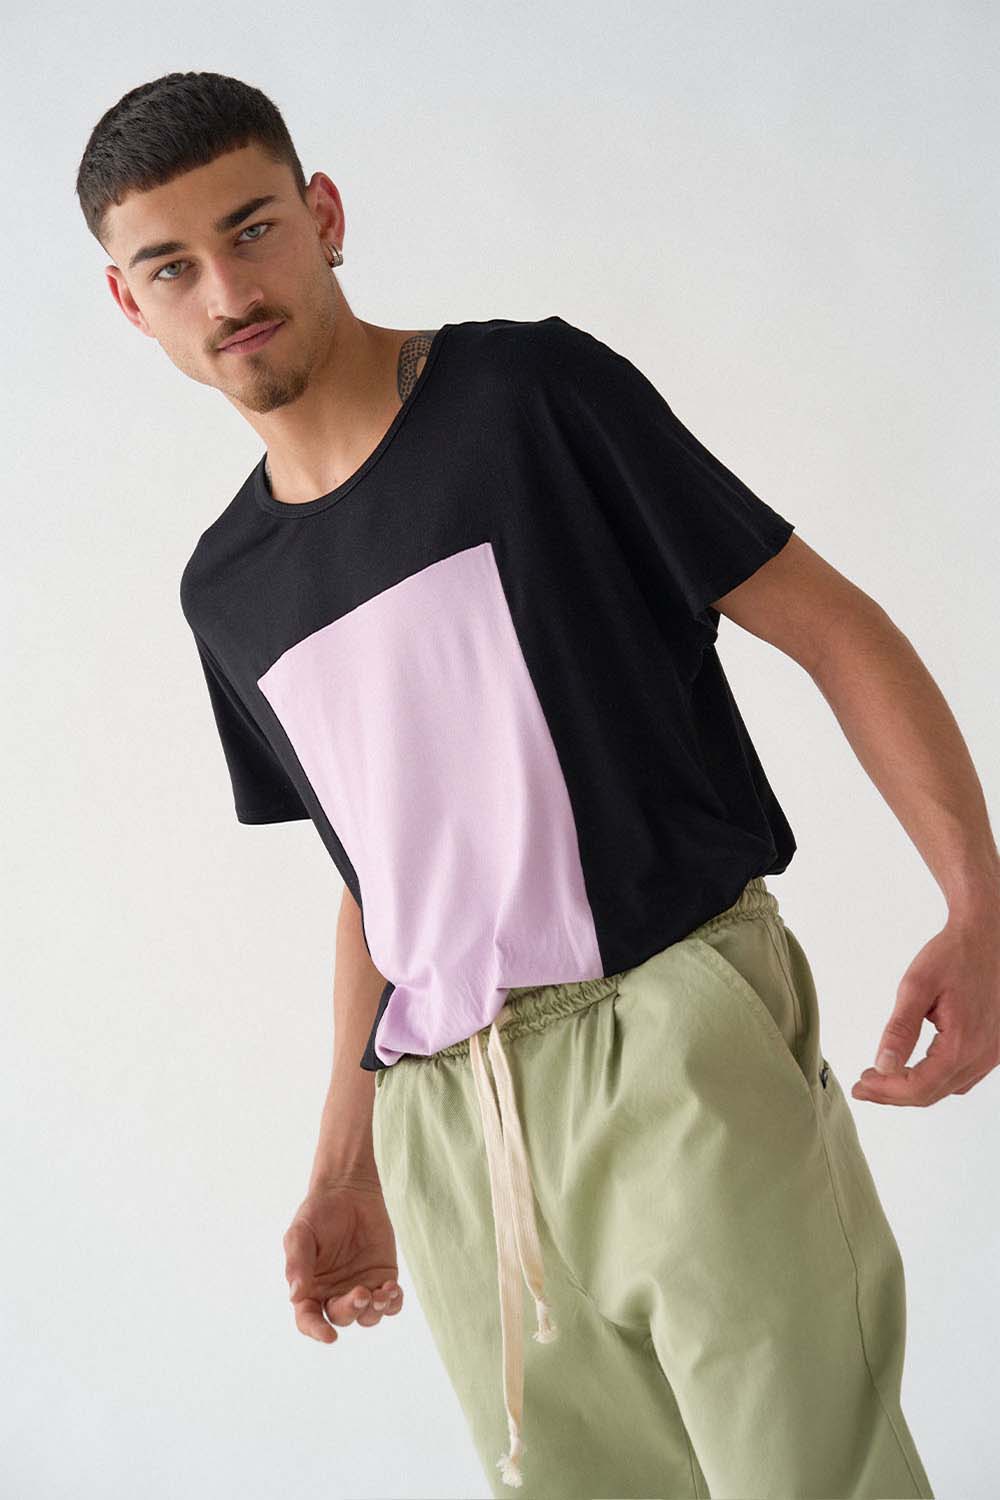 imagen de detalle de lado del modela con camiseta quadrilaterus negro y lila y pantalón worker verde